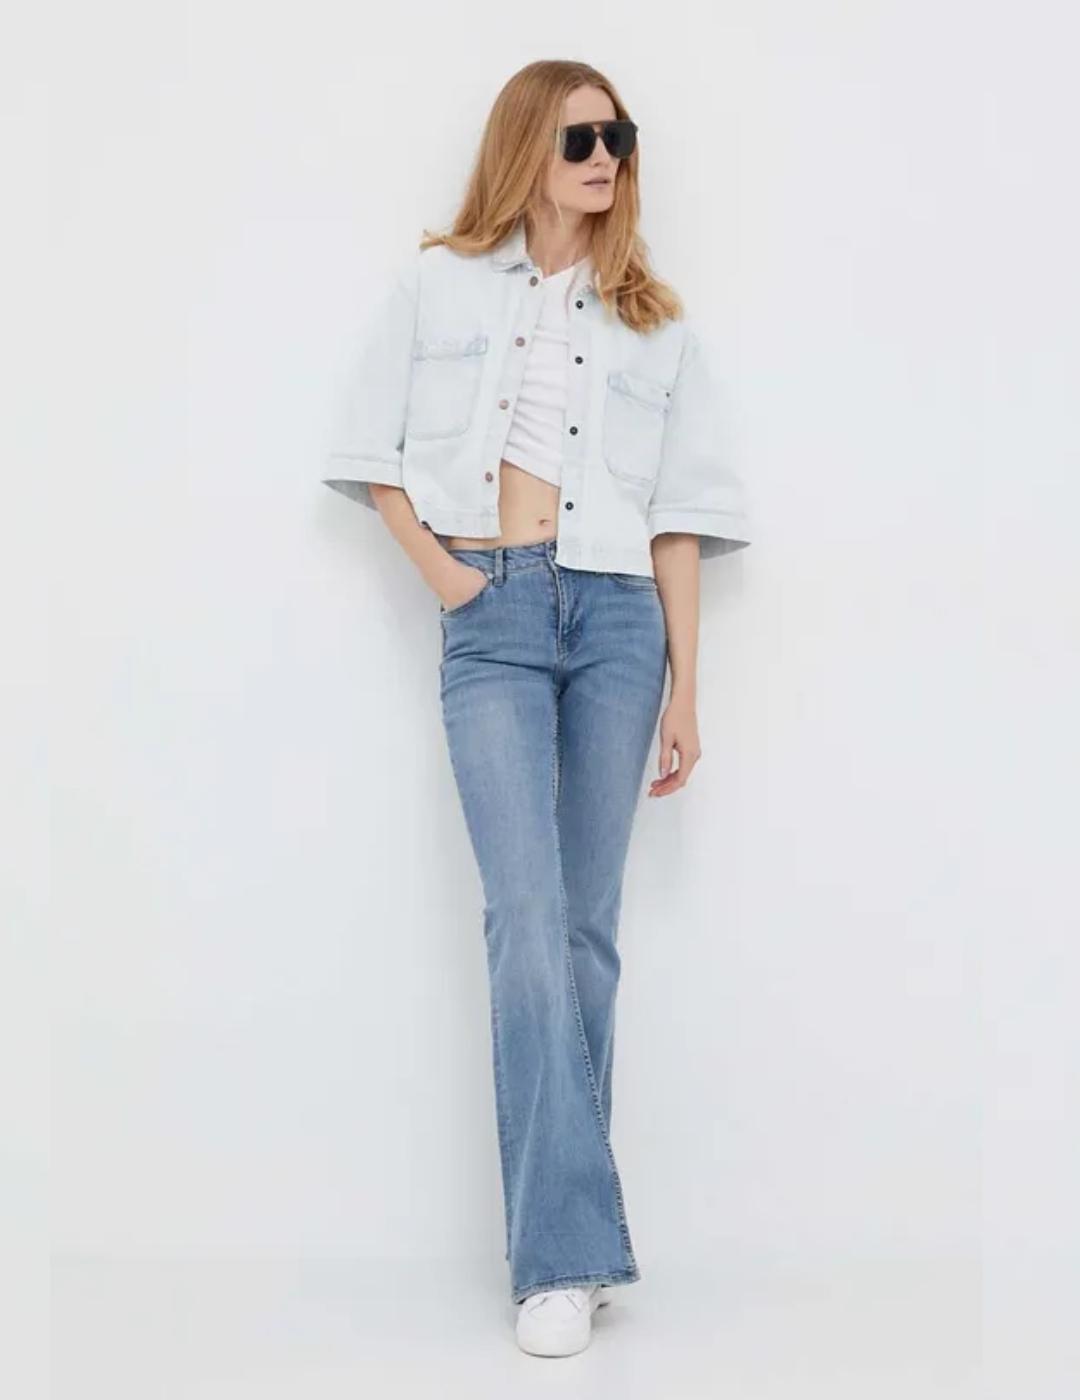 Camiseta blanca canalé Alexa asimétrico mujer pepe jeans